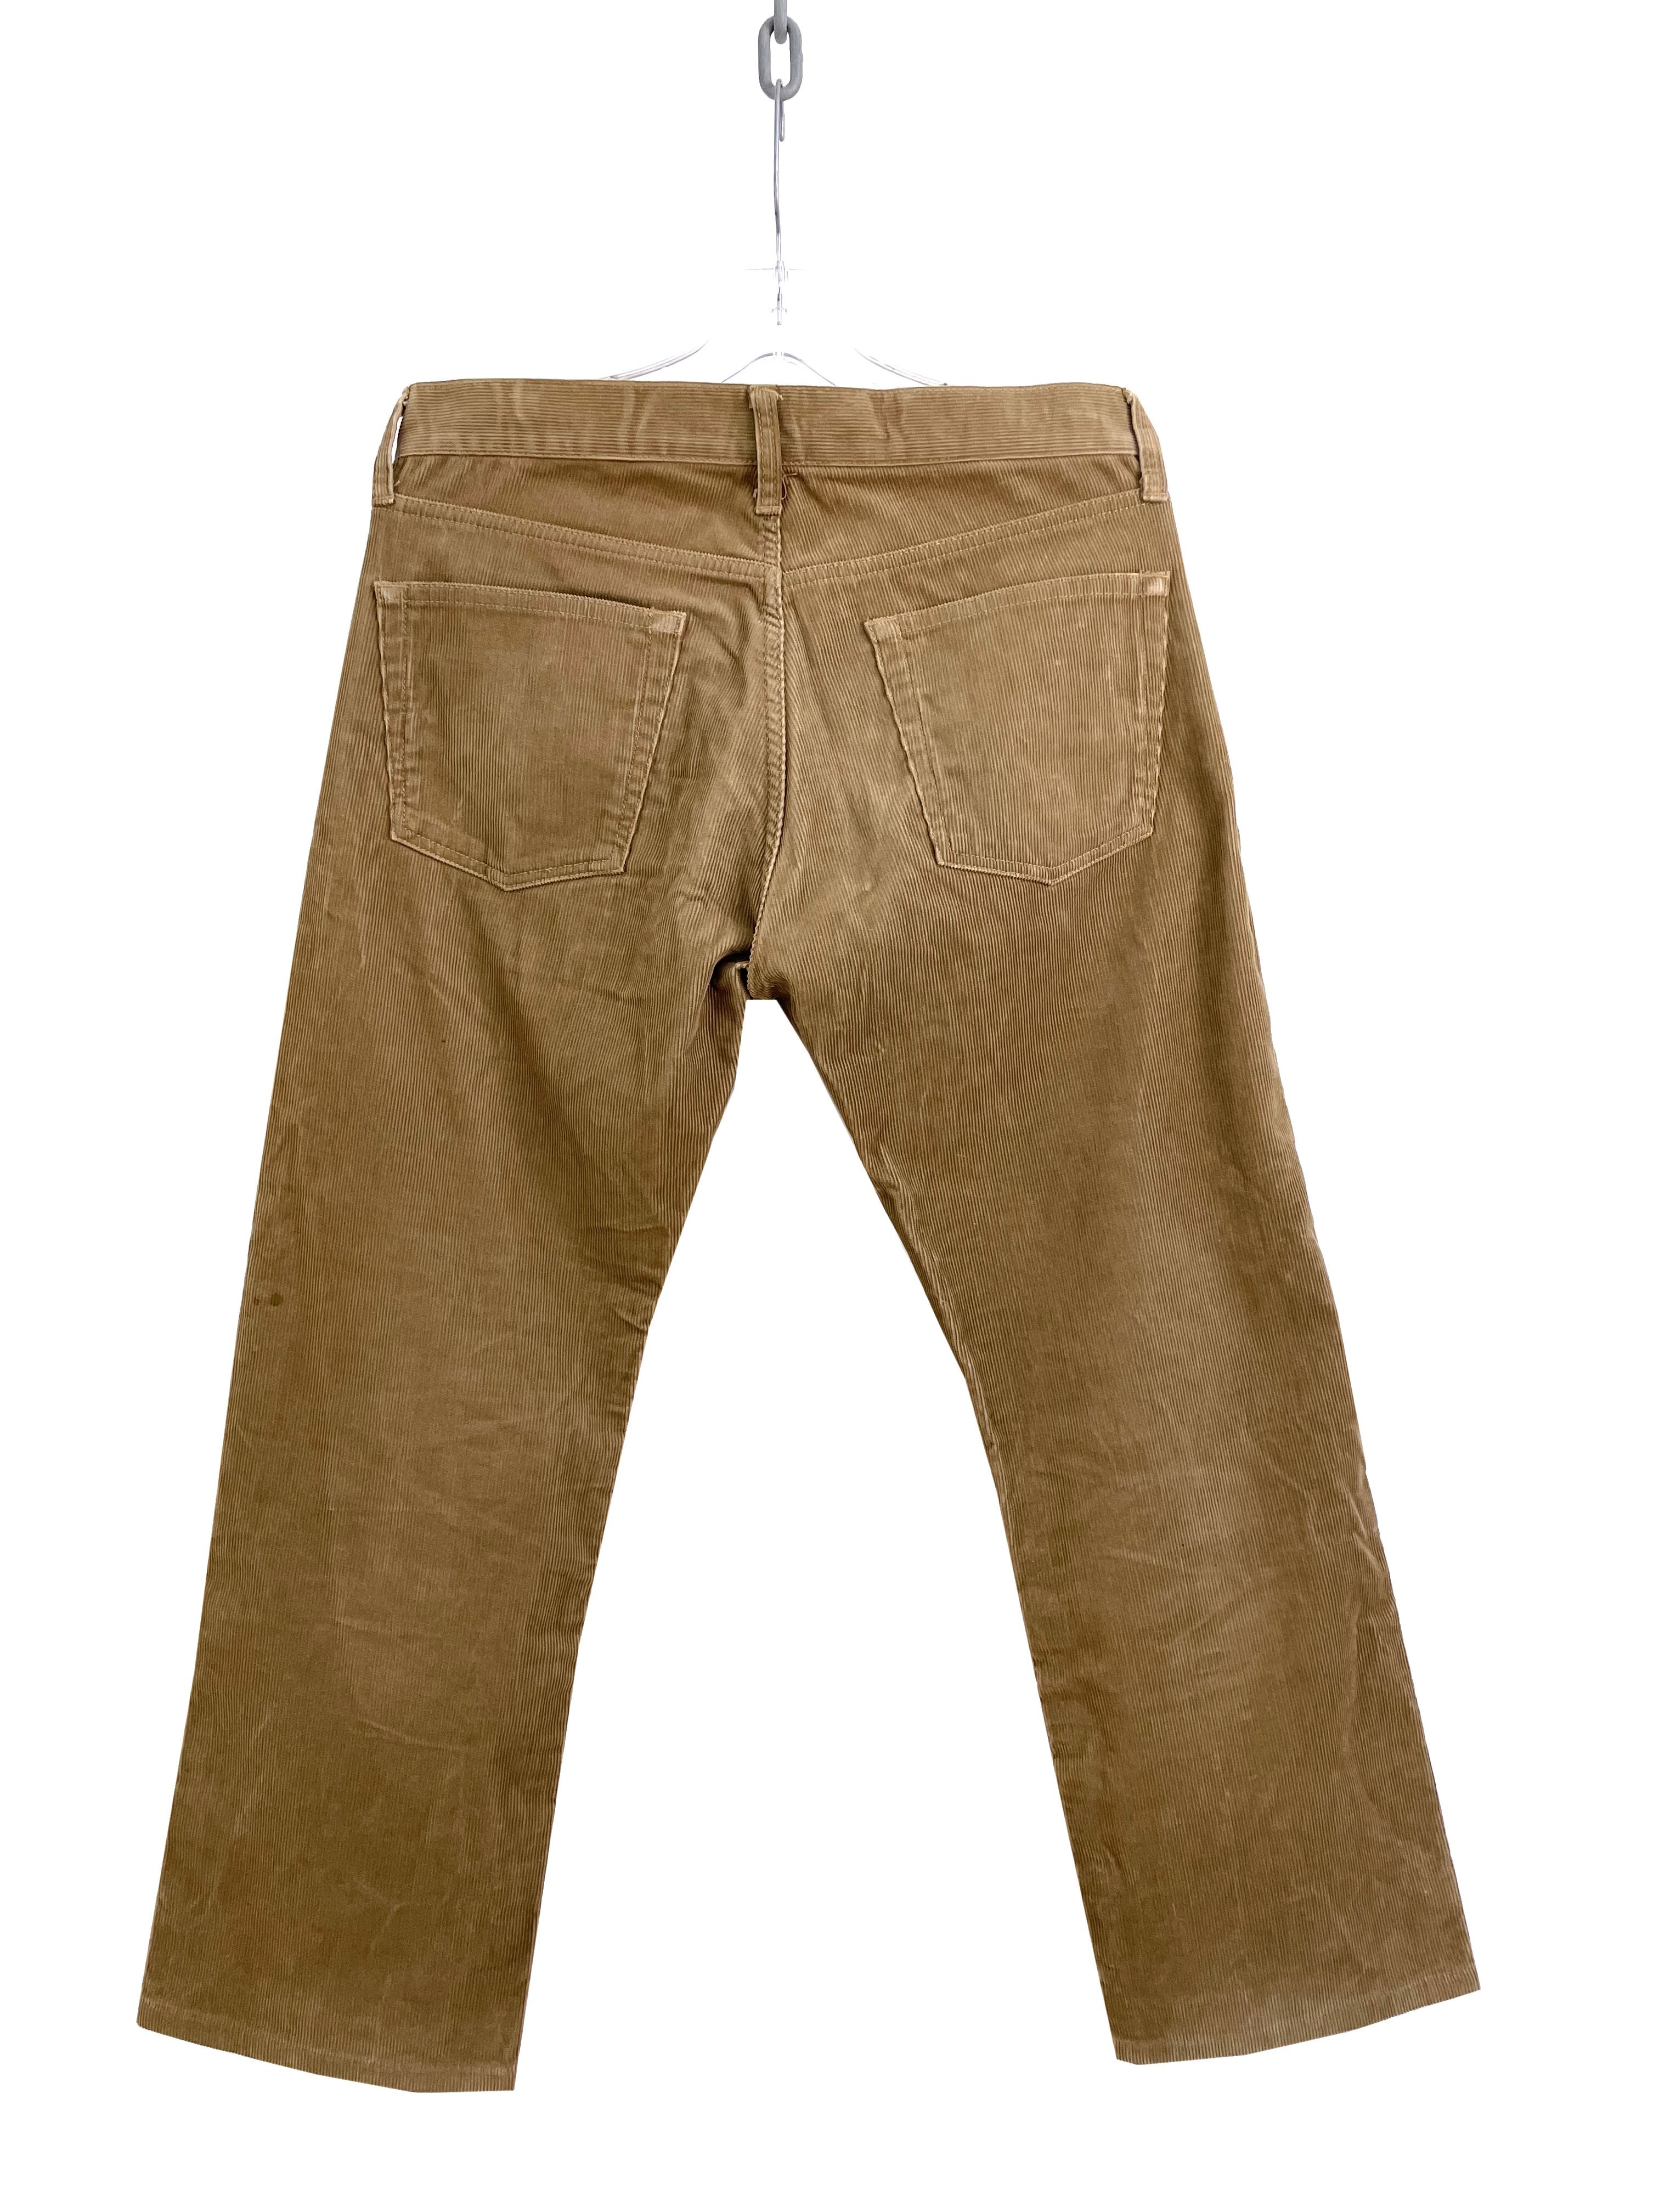 2003 Corduroy Pants - 5